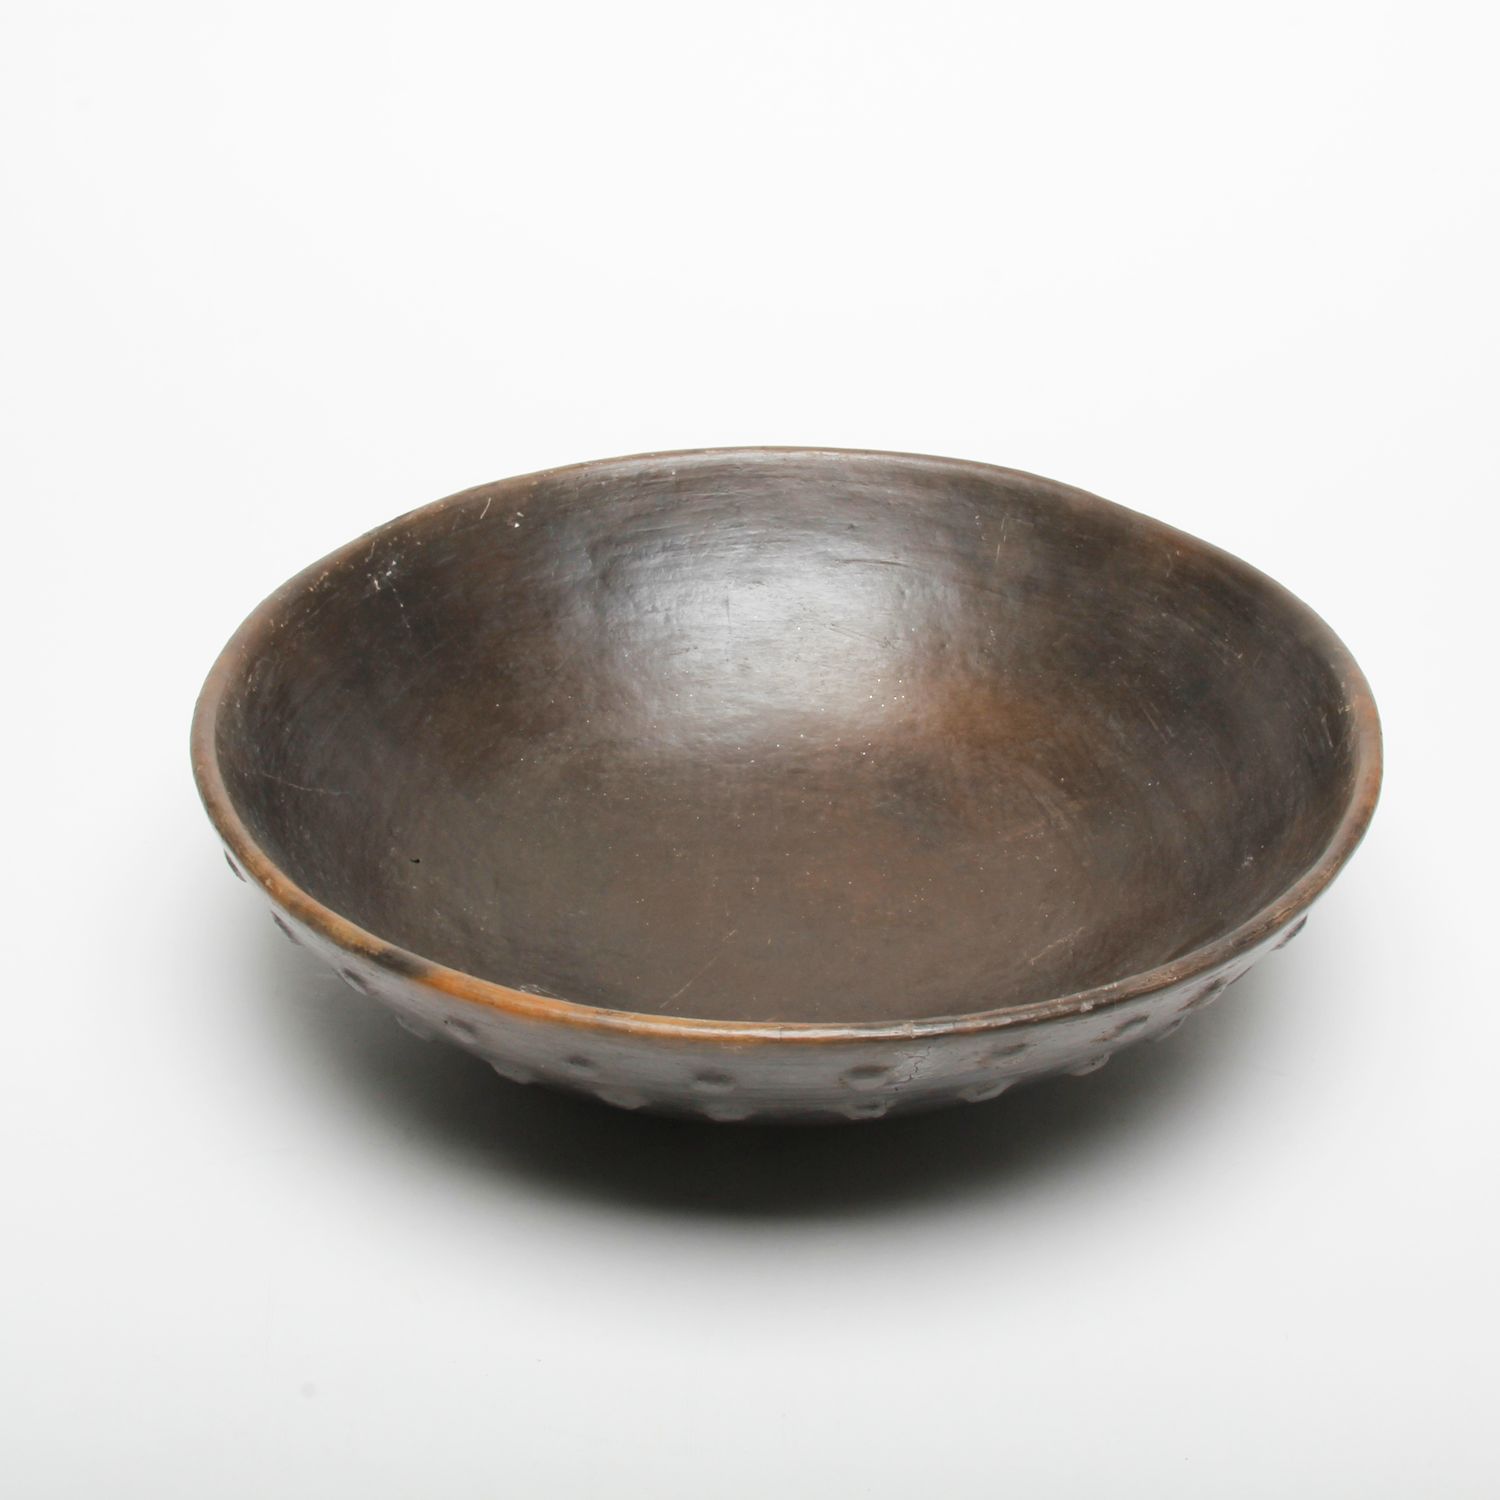 AfriCharisma: Large Zulu Bowl Product Image 3 of 3